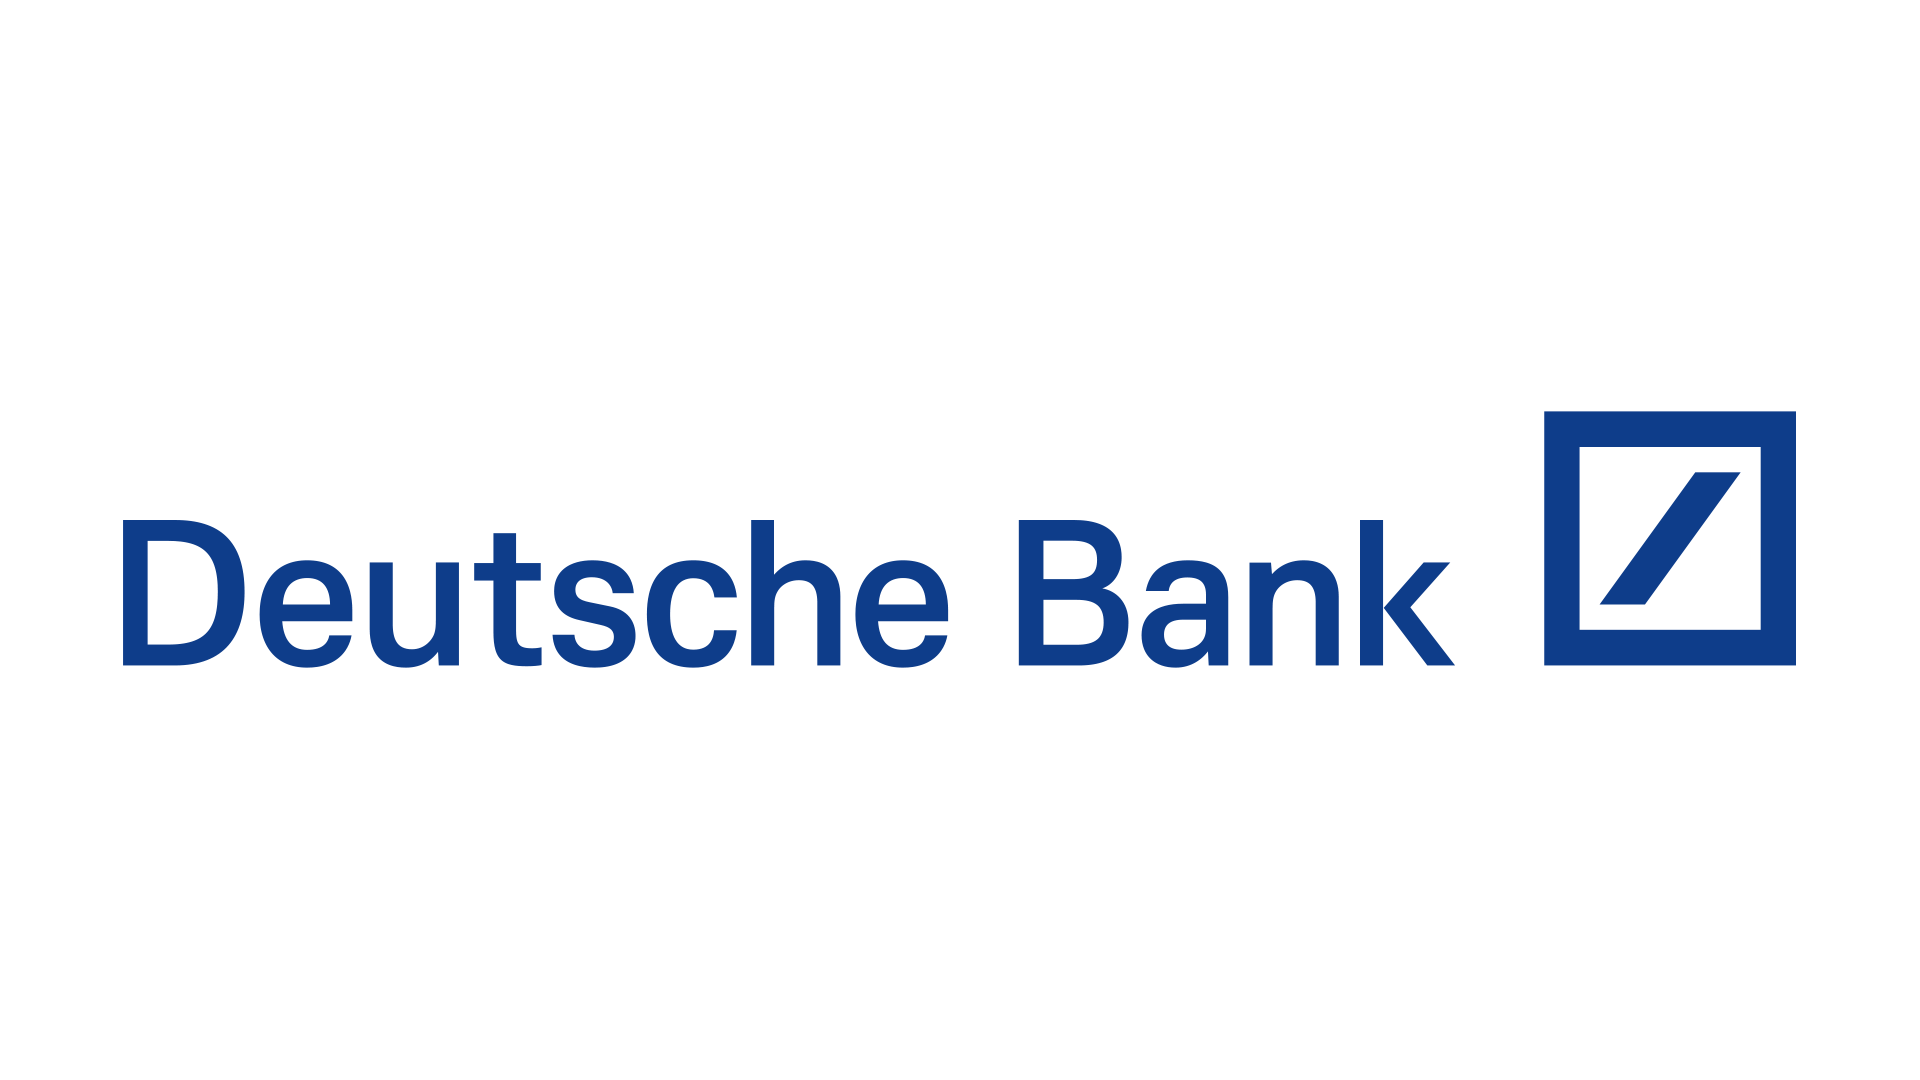 Wirtschaftstag_2024_0025_logotype_deutsche_bank_right_alignment_below_40mm_cmyk